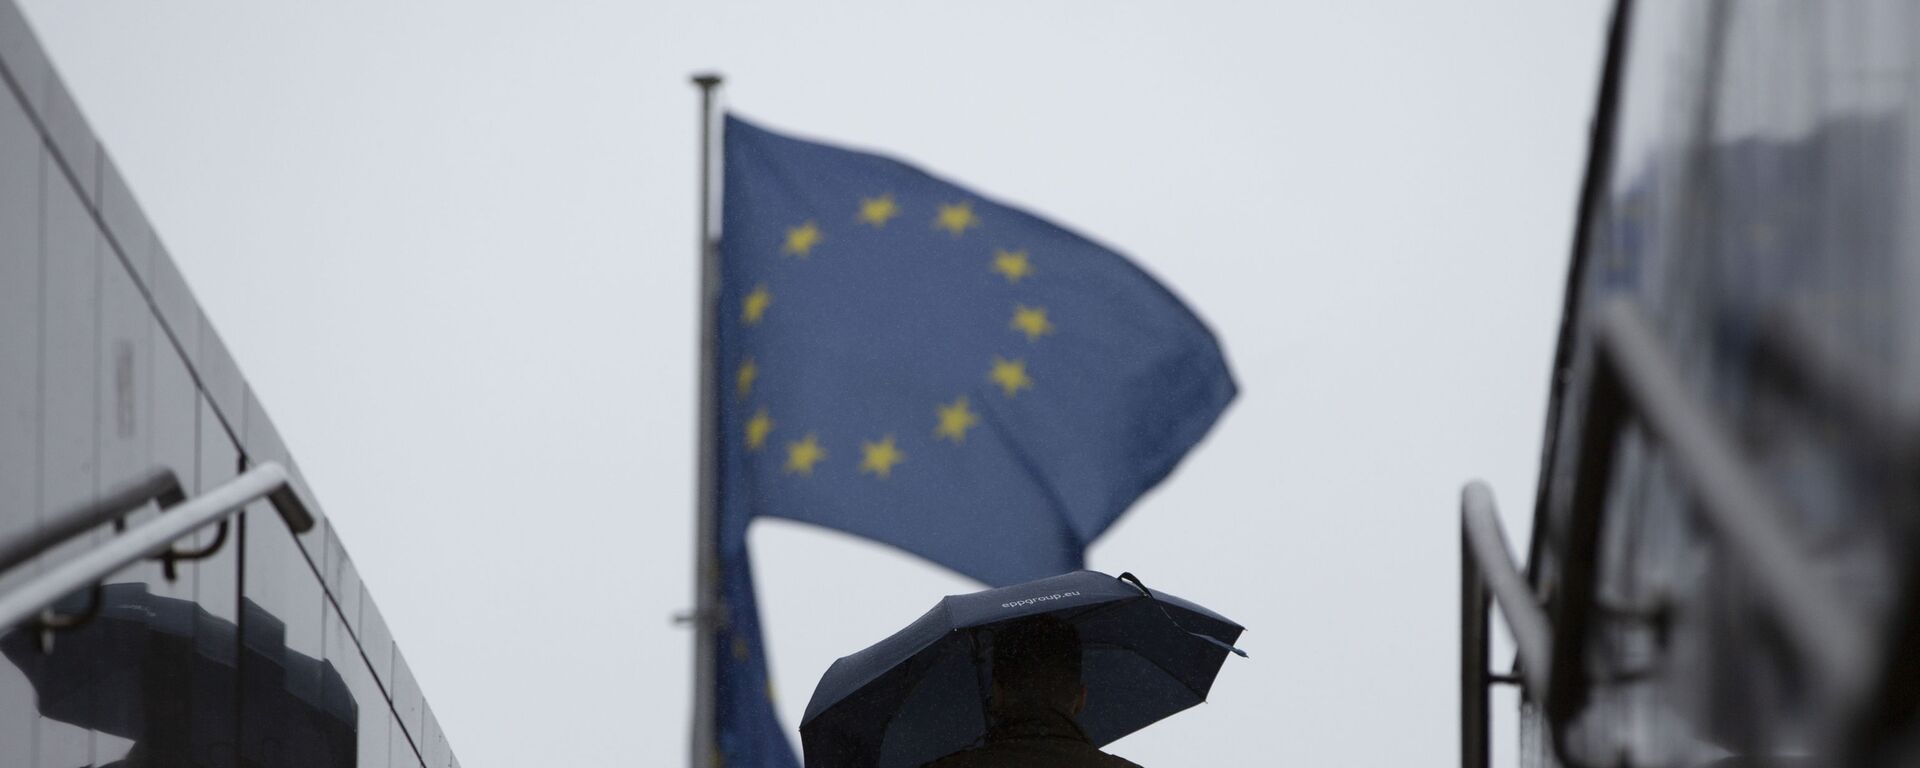 Мужчина с зонтиком идет к флагам ЕС у штаб-квартиры ЕС в Брюсселе - Sputnik Молдова, 1920, 25.06.2021